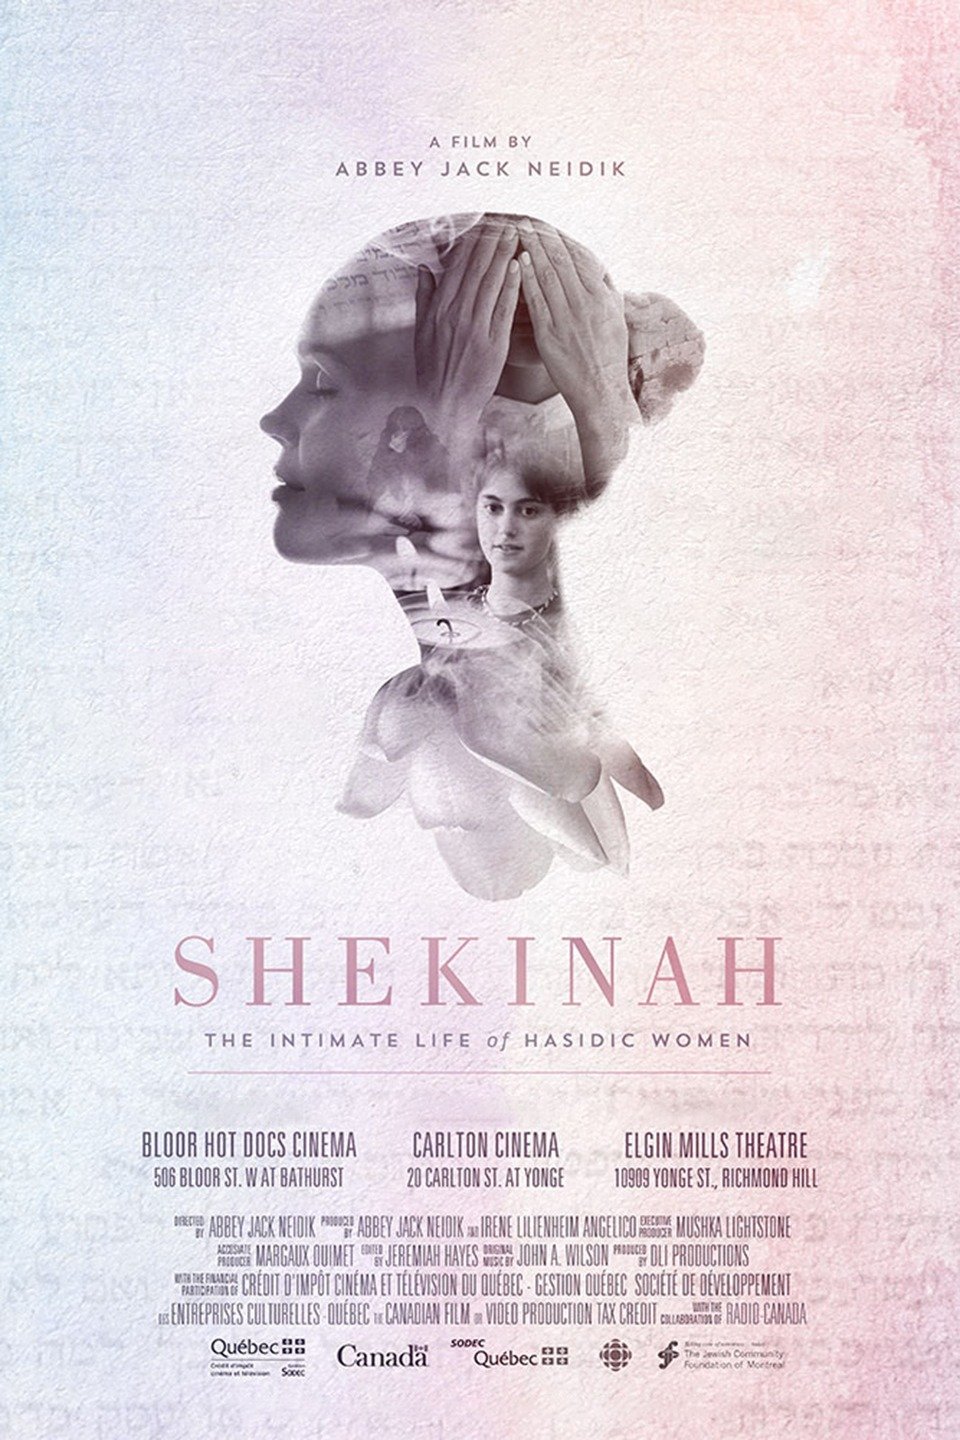 Shekinah The Intimate Life of Hasidic Women